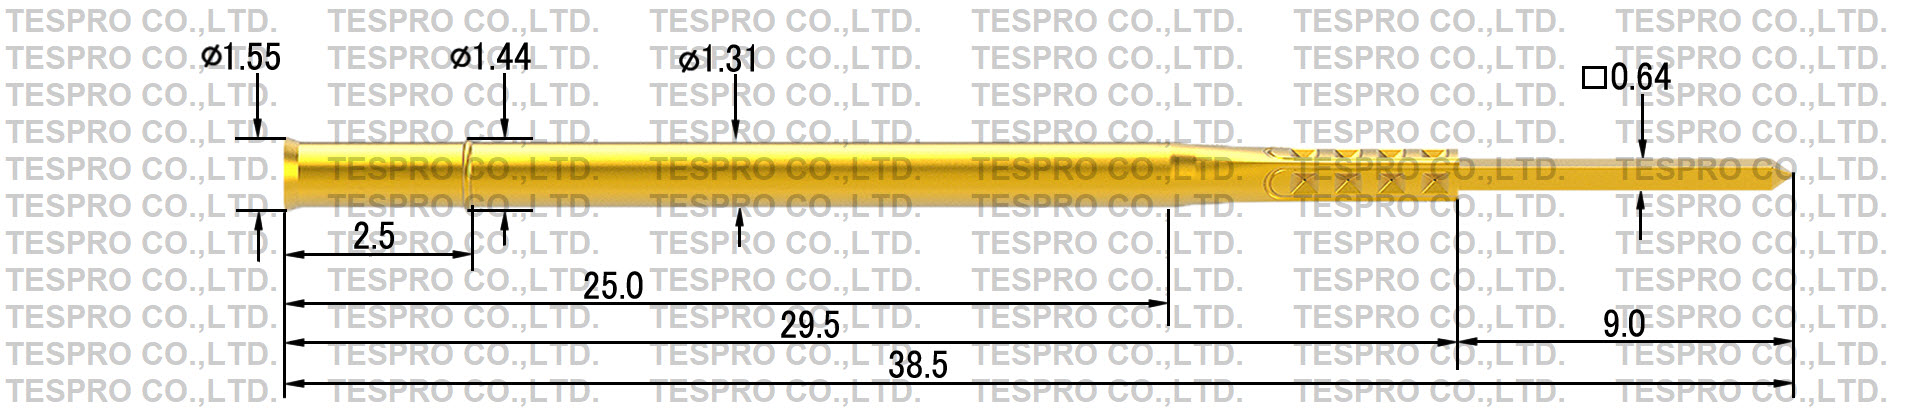 http://tespro-jp.com/product/tr1_0s2_tespro.jpg